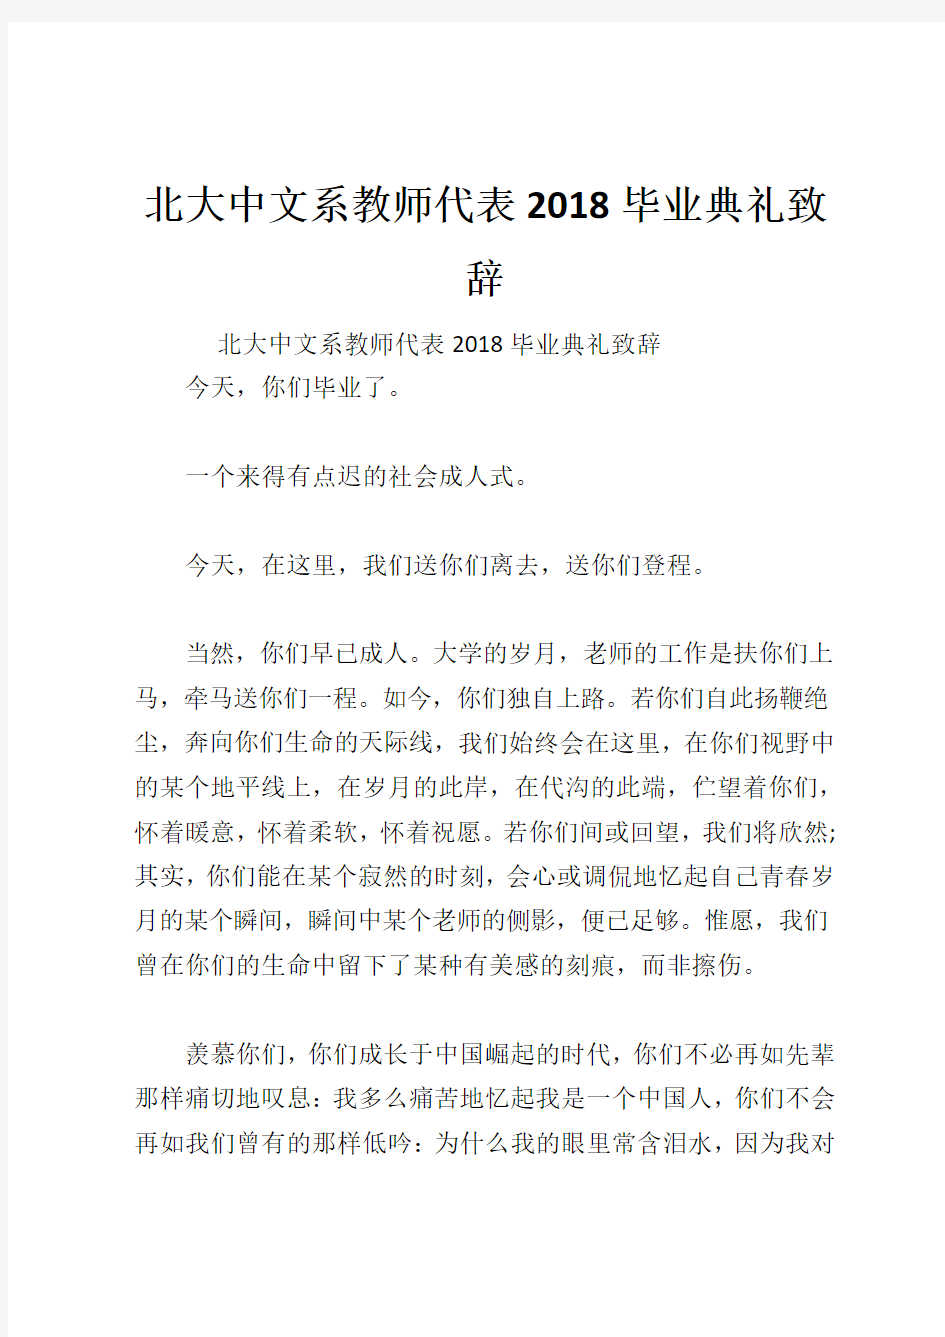 北大中文系教师代表2018毕业典礼致辞